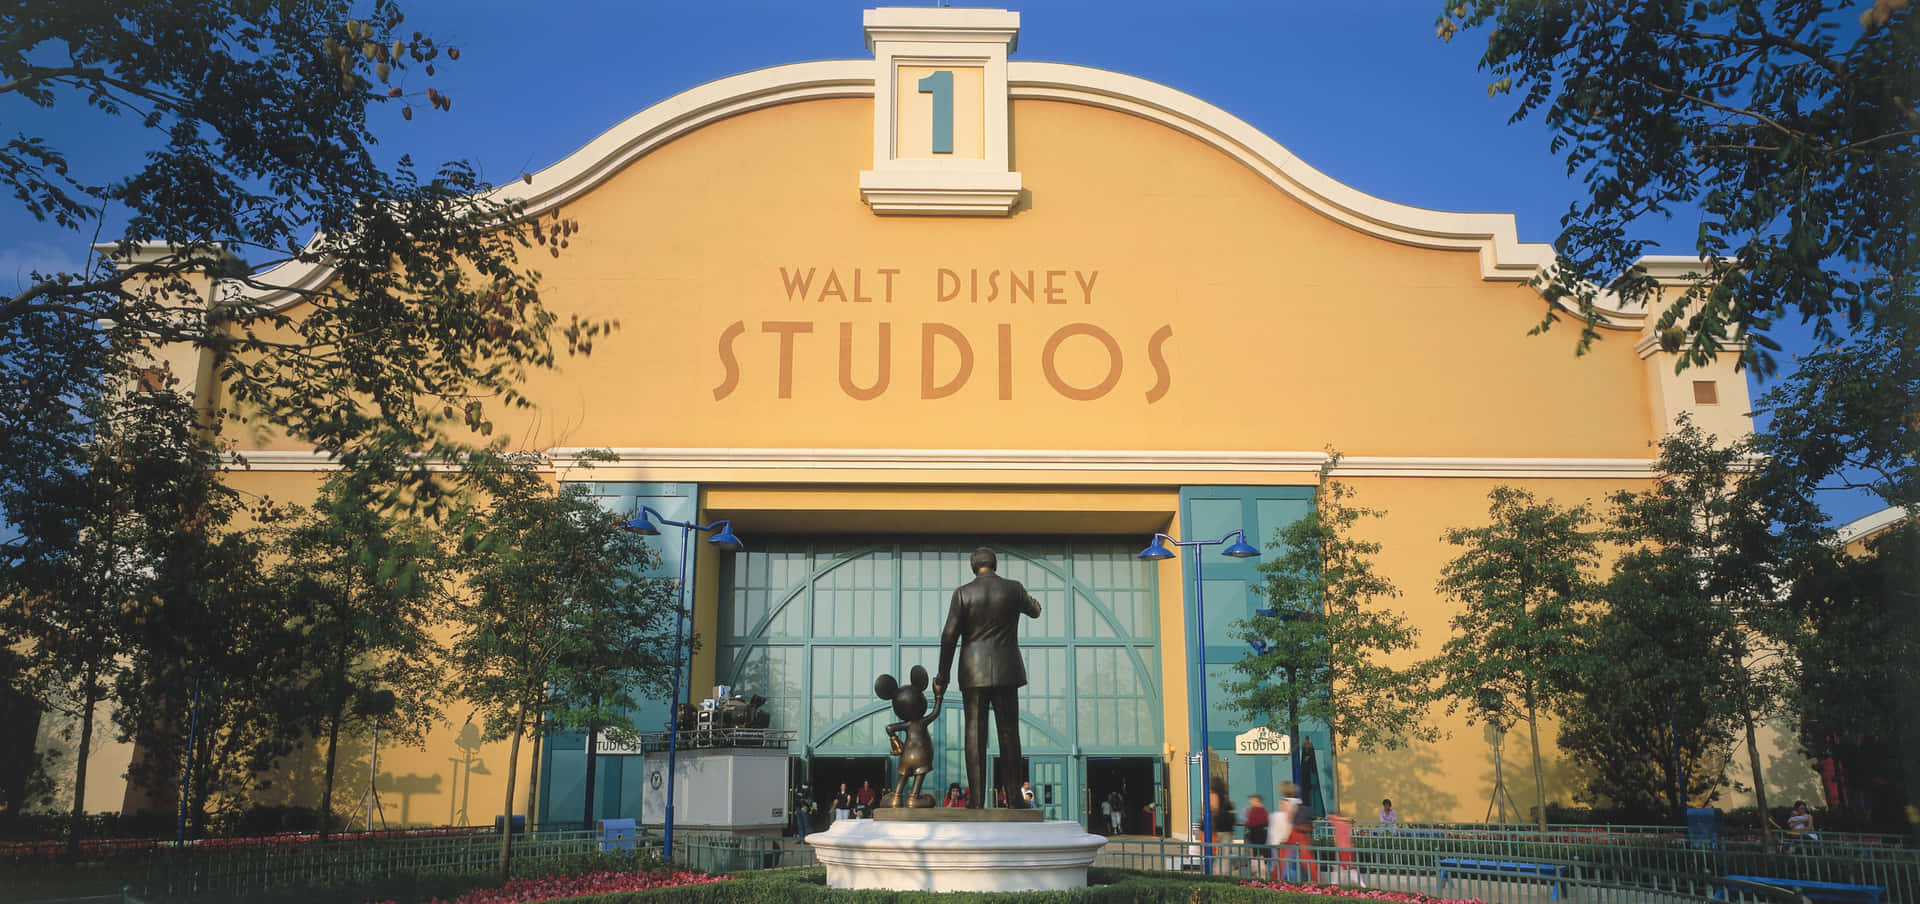 Walt Disney Studios - Walt Disney Welt.